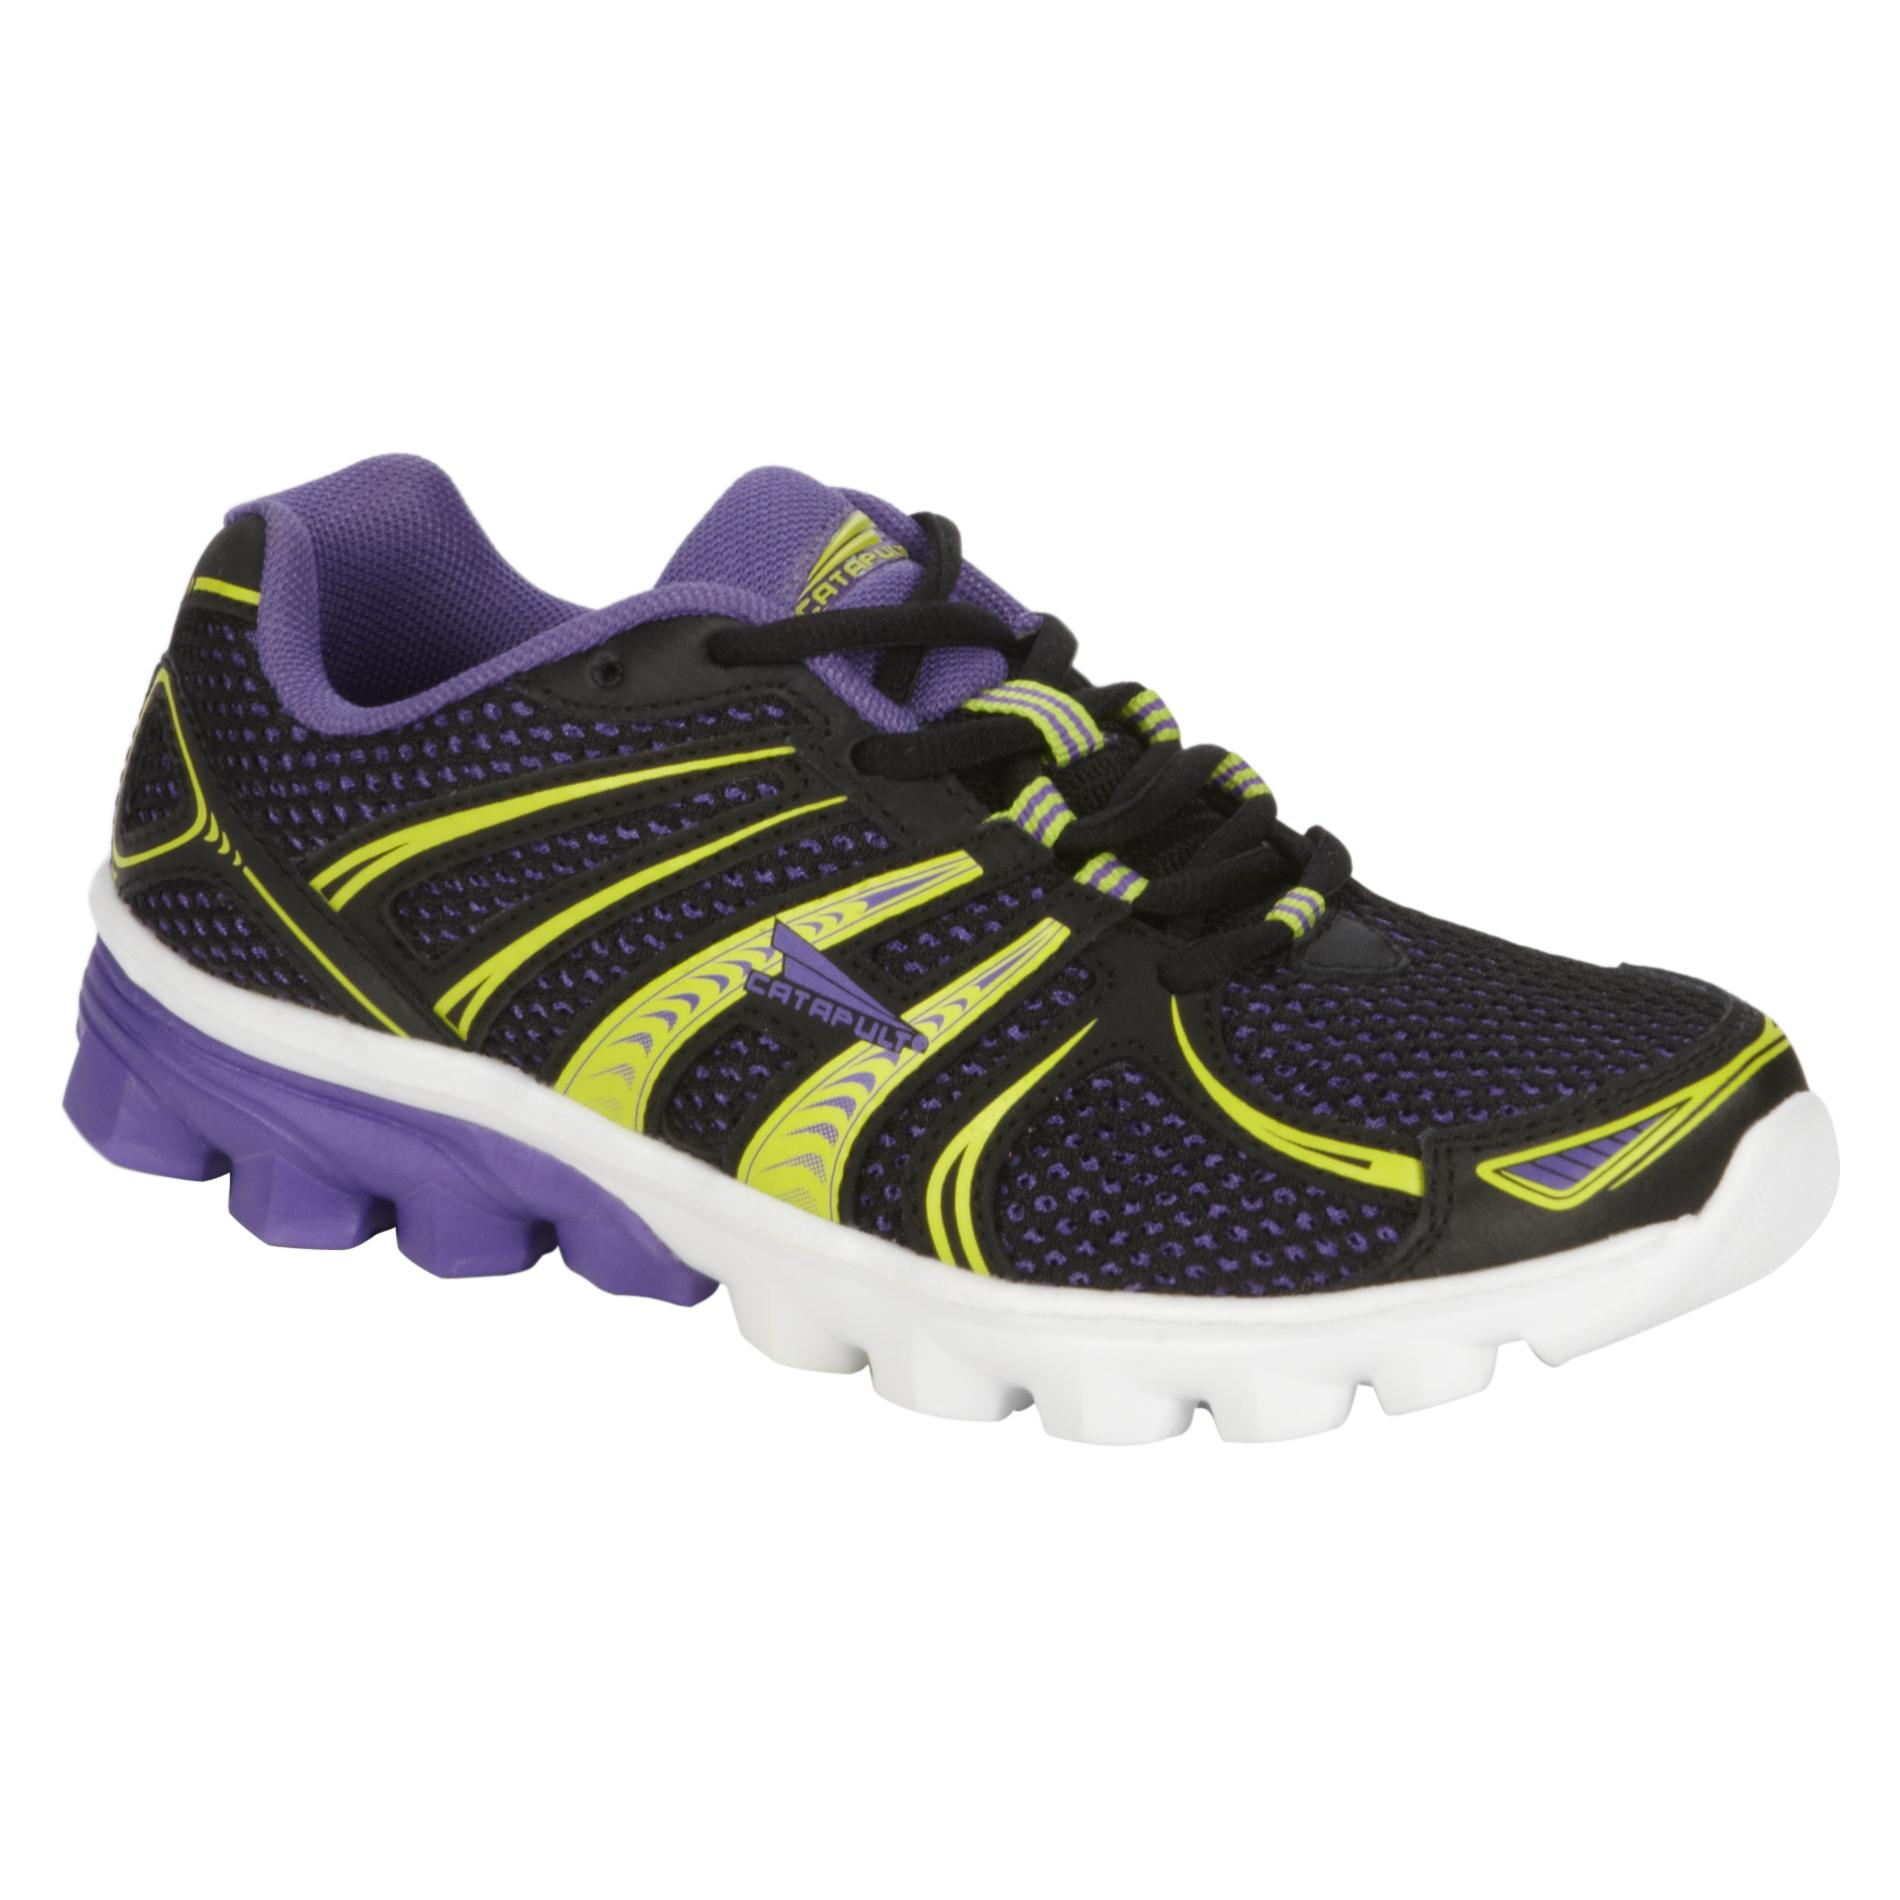 CATAPULT Women's Athletic Shoe Conquest - Purple